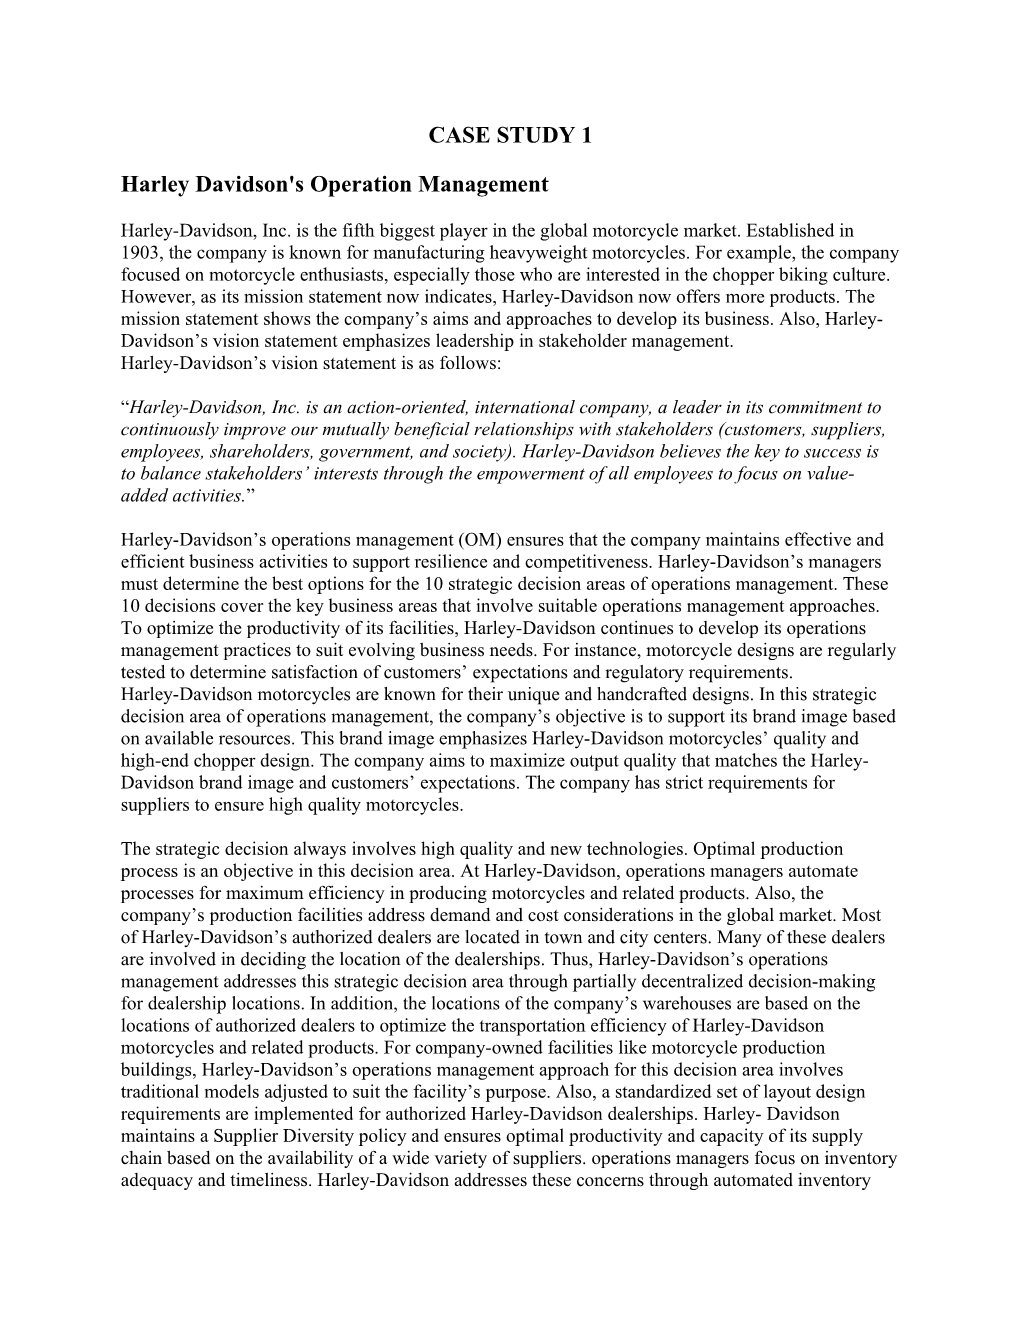 Harley Davidson's Operation Management